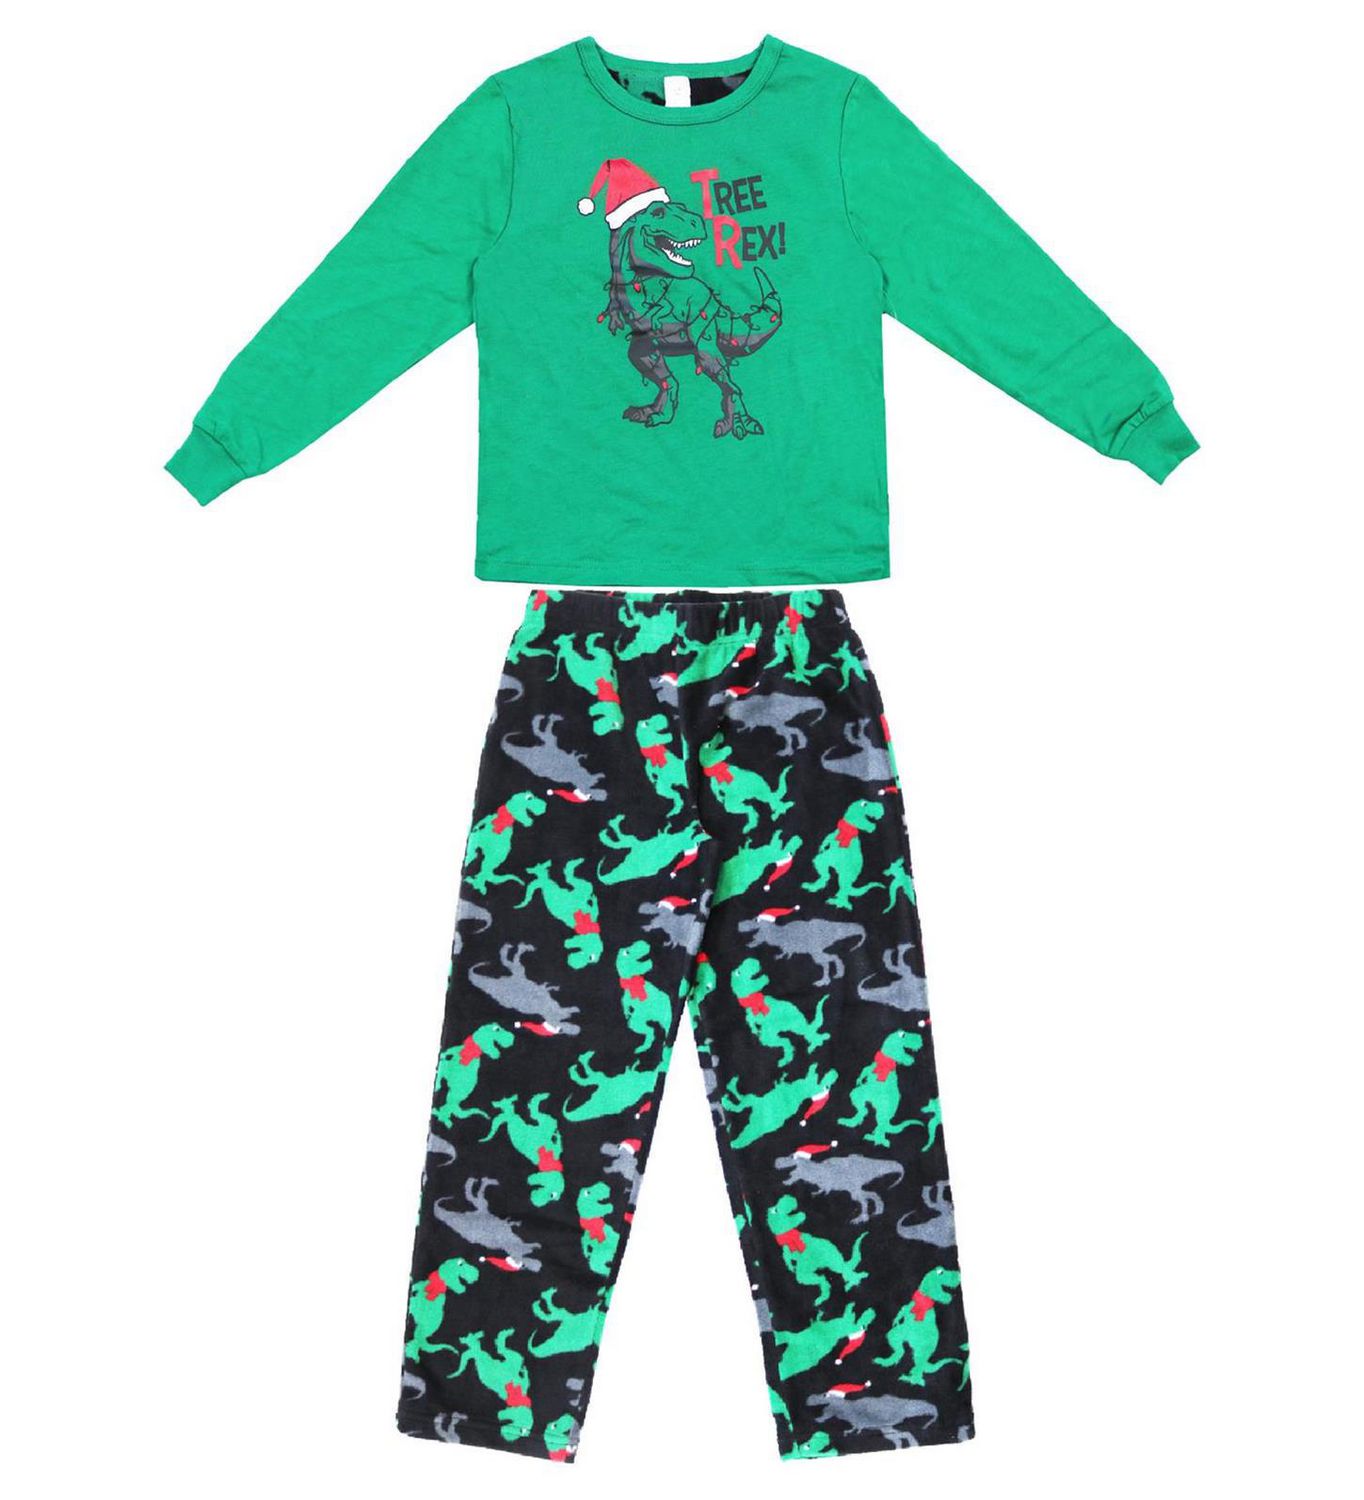 George two piece pyjama set for boys | Walmart Canada